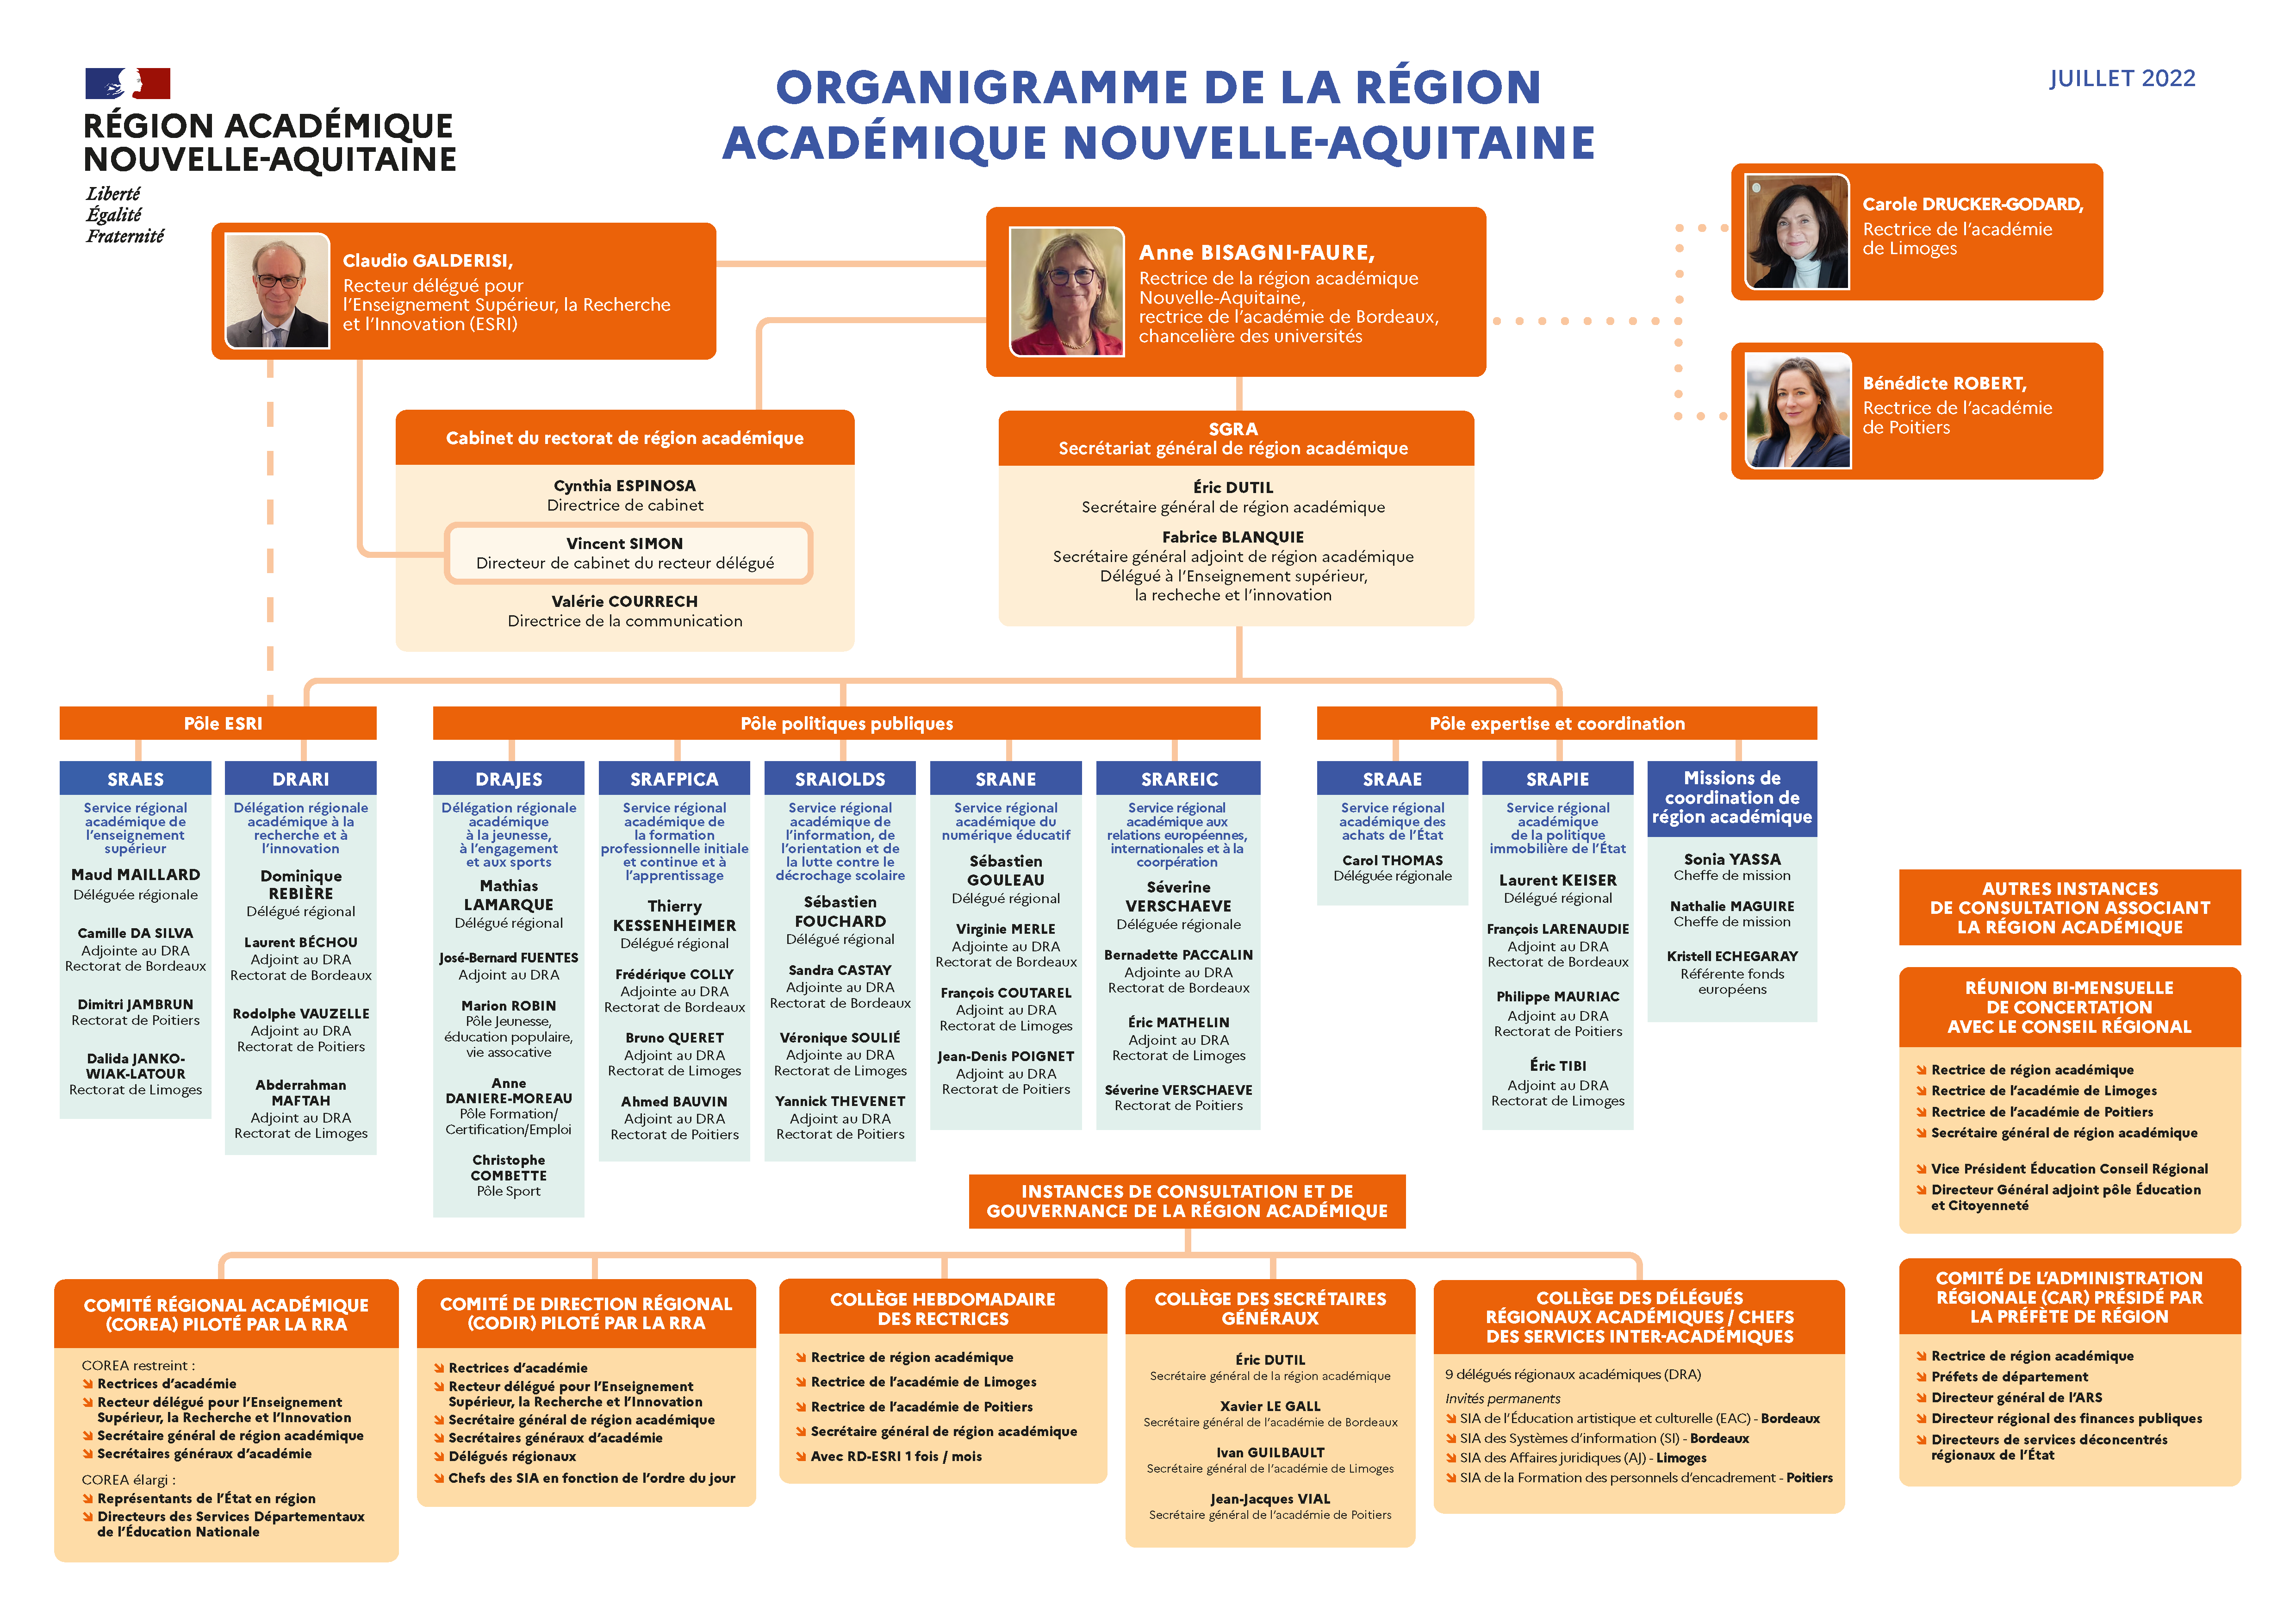 Organigramme de la région académique Nouvelle-Aquitaine